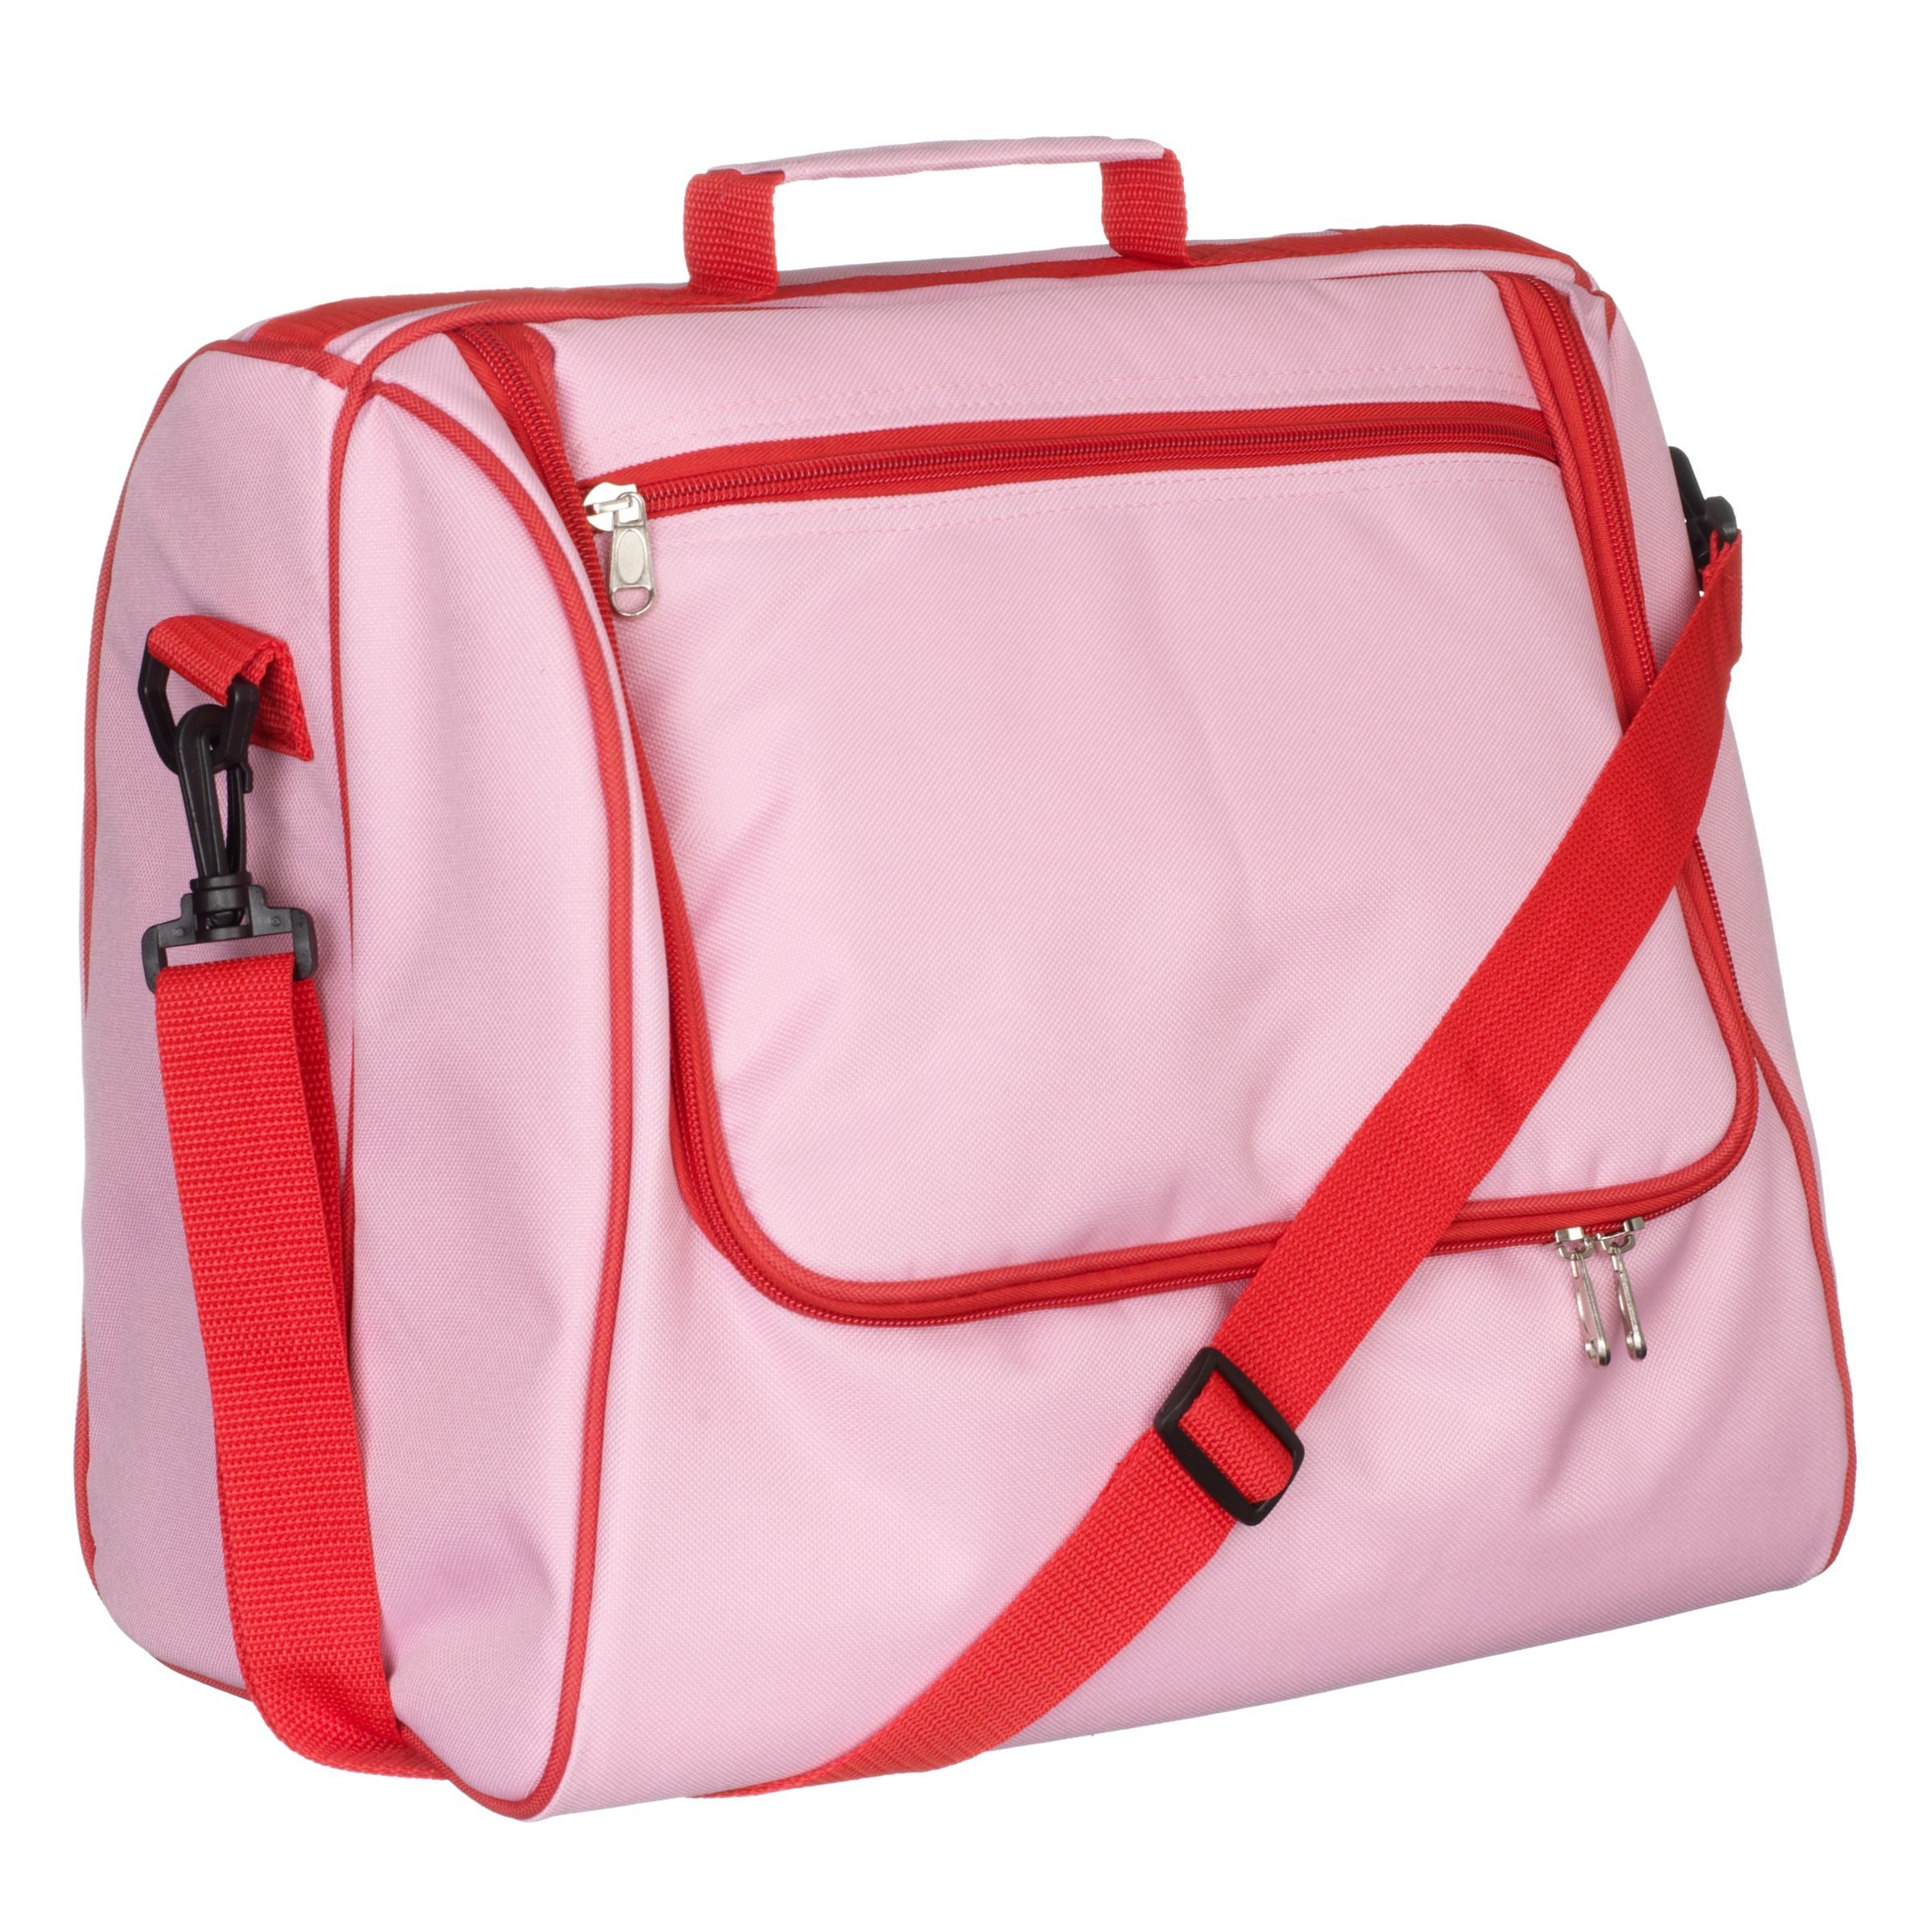 John Lewis 4 Person Picnic Cooler Bag Set, Red/ Pink